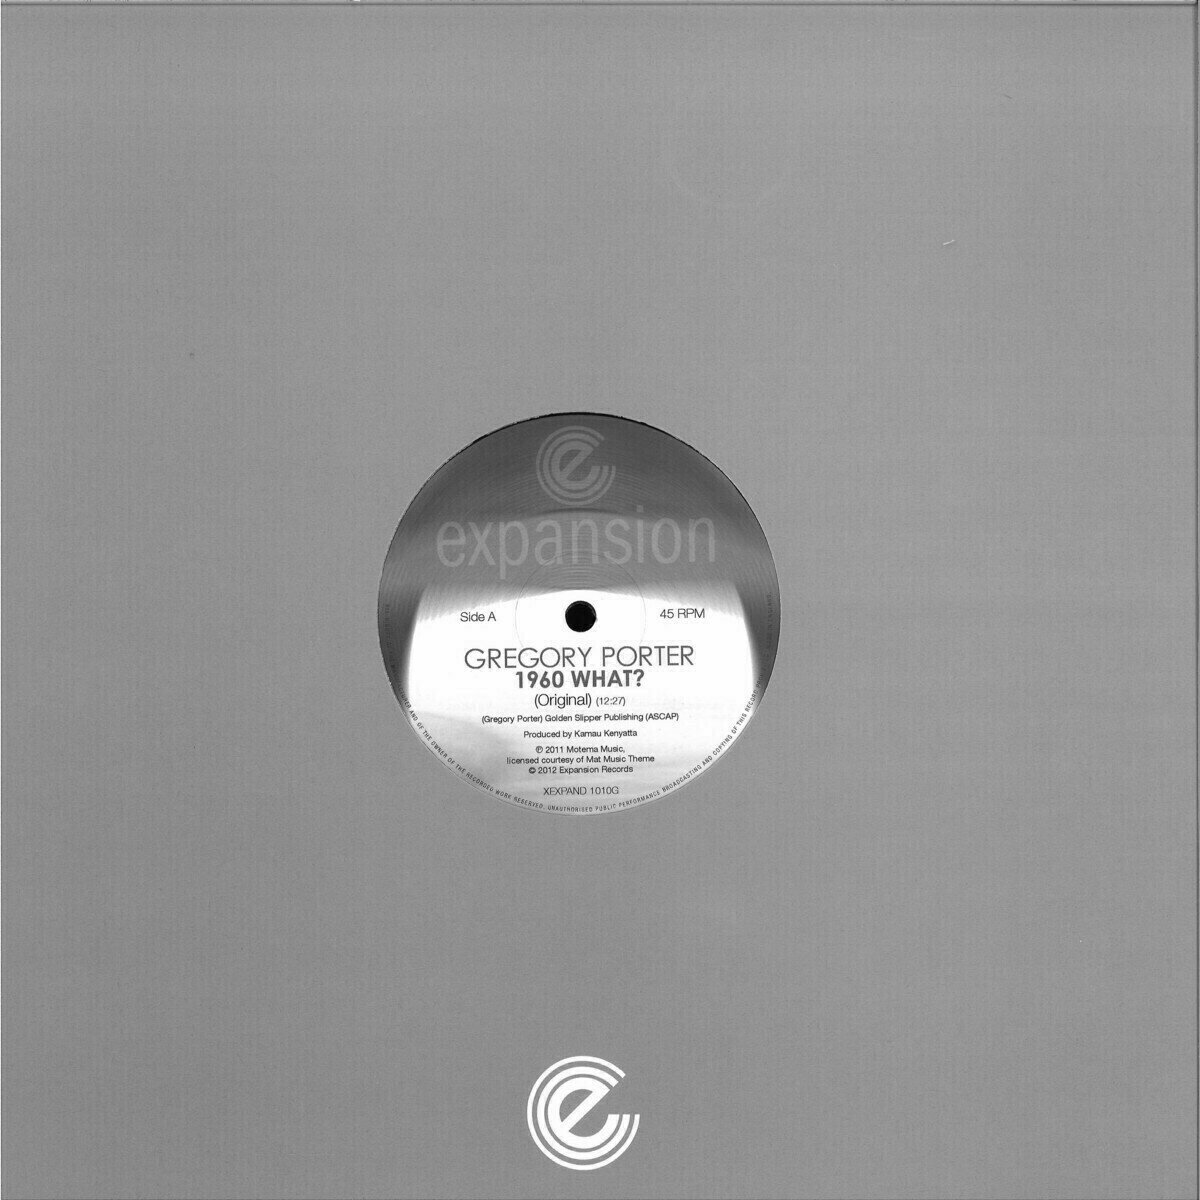 Schallplatte Gregory Porter - 1960 What? (Original Mix) (12" Vinyl)